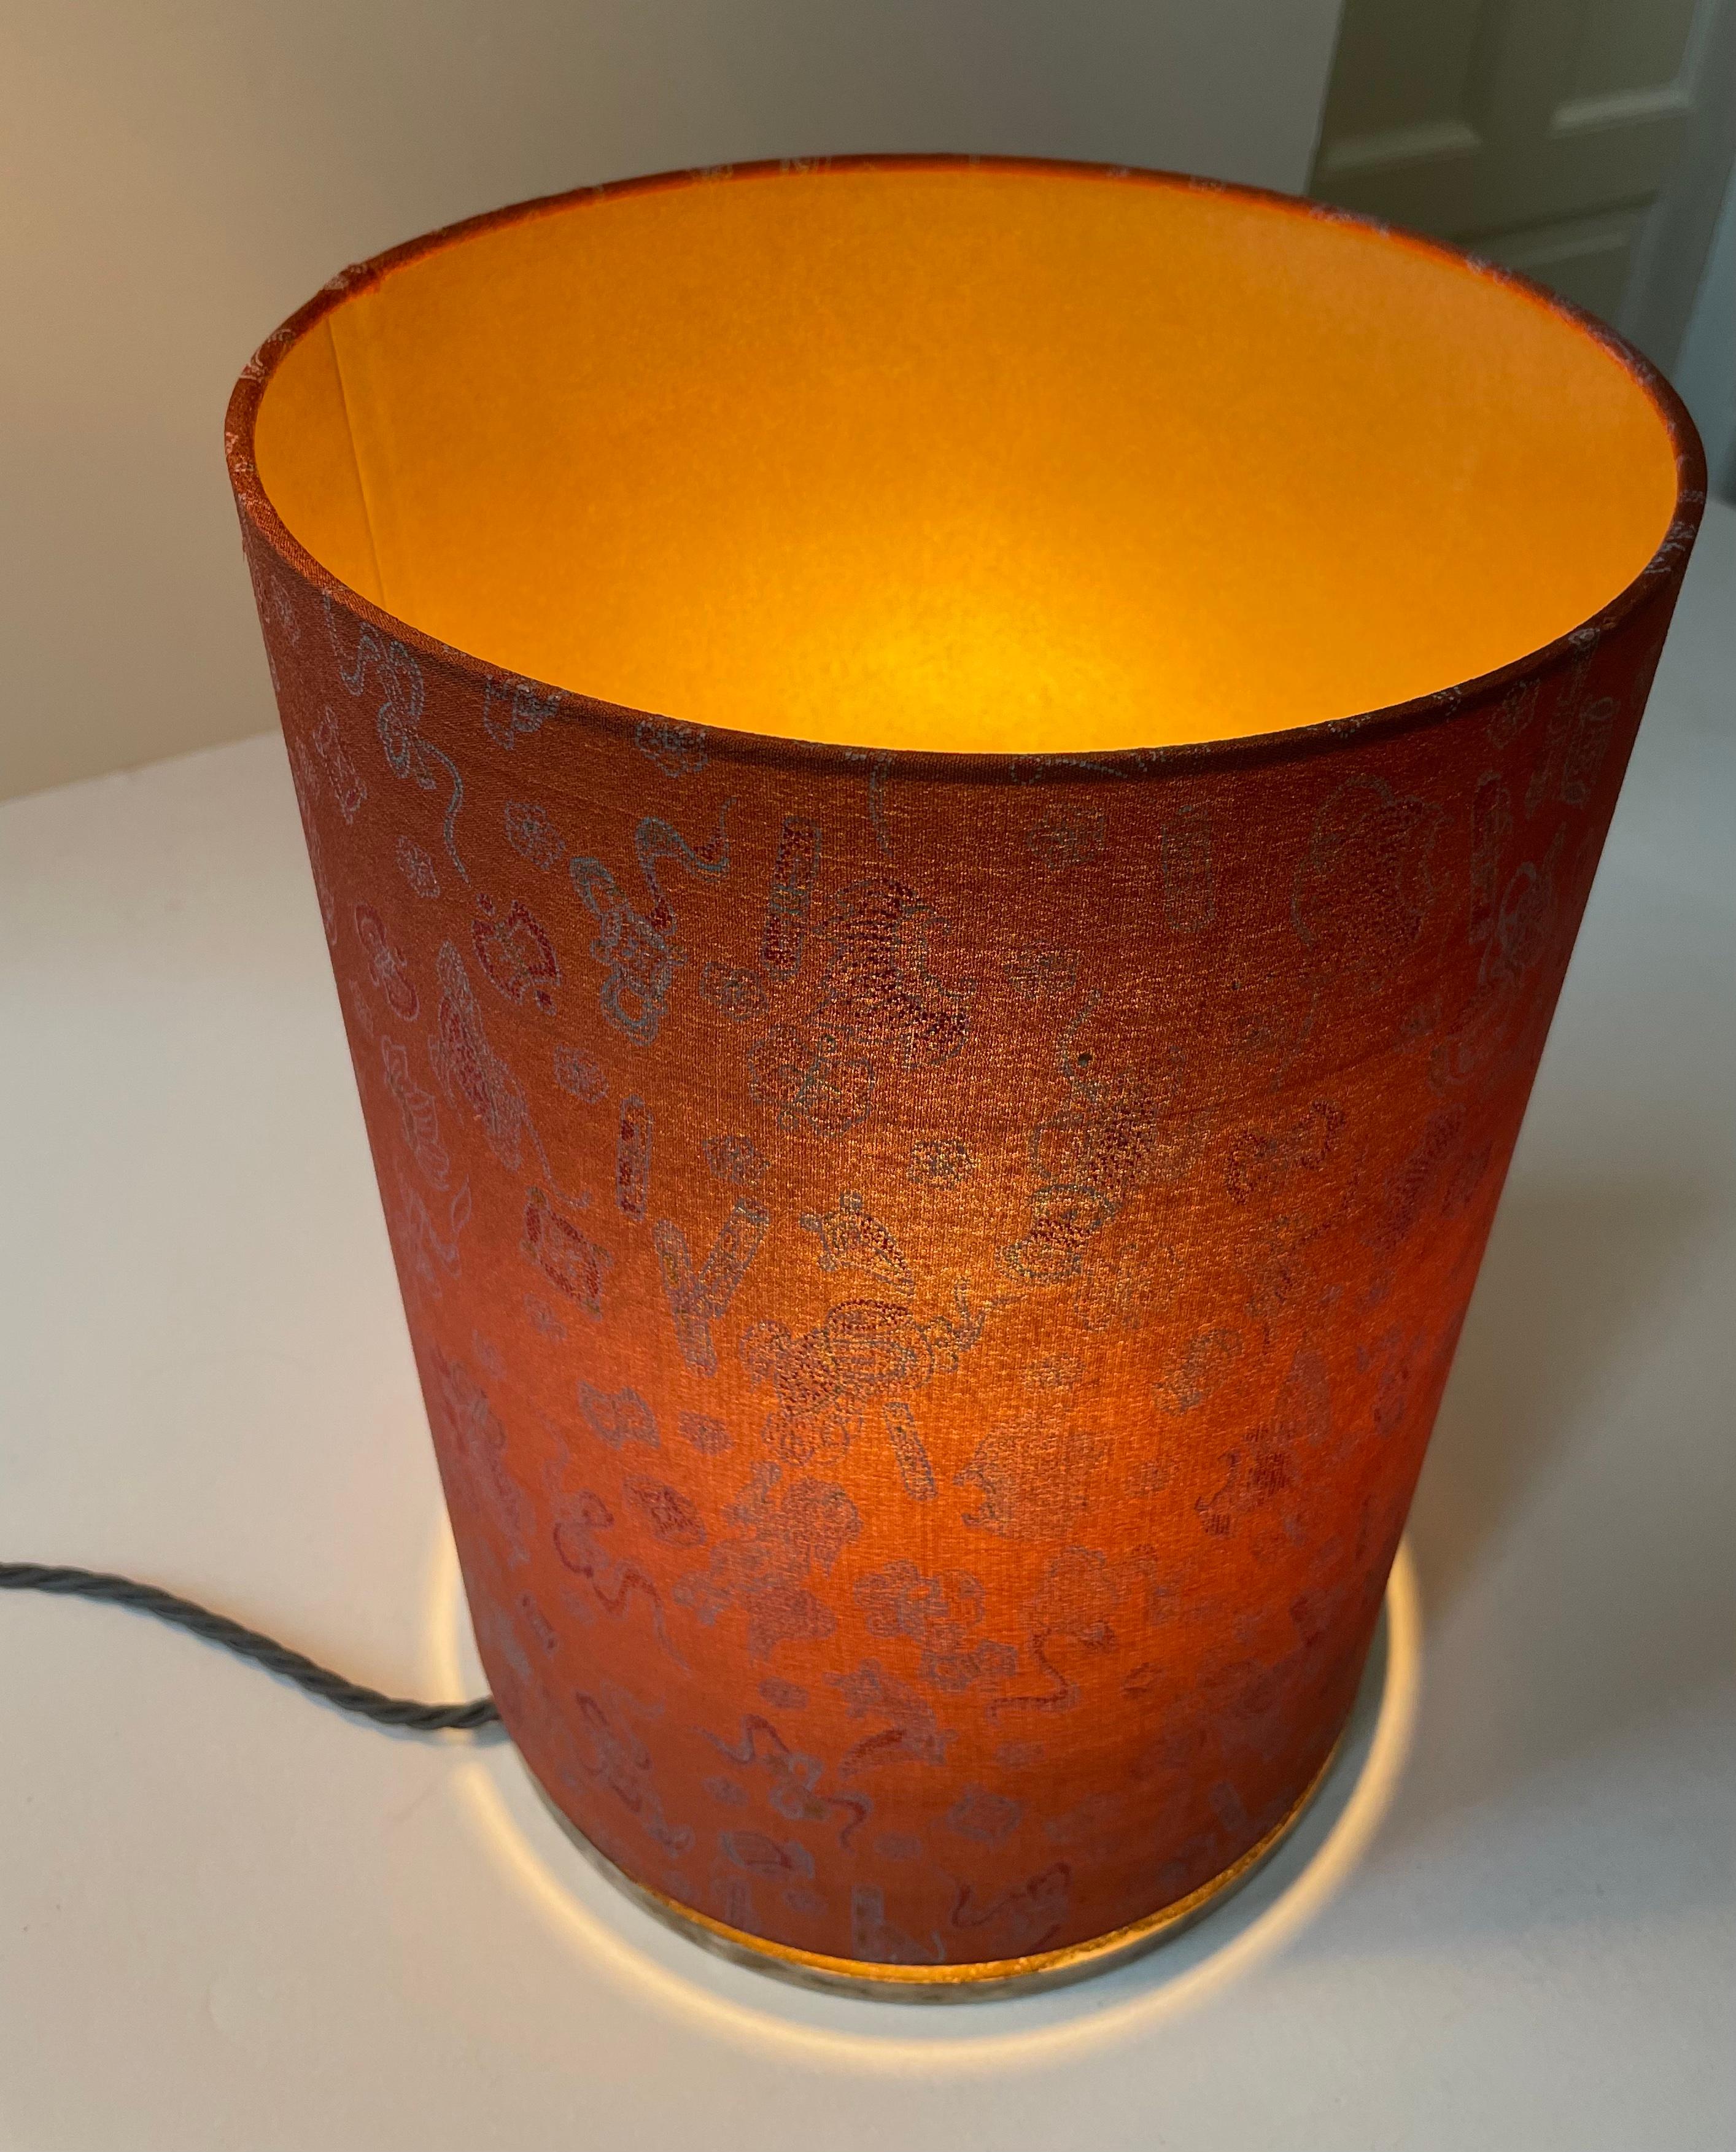 Il s'agit de l'un des nombreux objets lumineux créés par Geroma Löw x Atelier Livia.
- chaque objet est unique.
Le dos de la carte de l'abat-jour a été coloré en or à l'aide d'une technique spéciale afin de laisser transparaître la lumière.
Cet